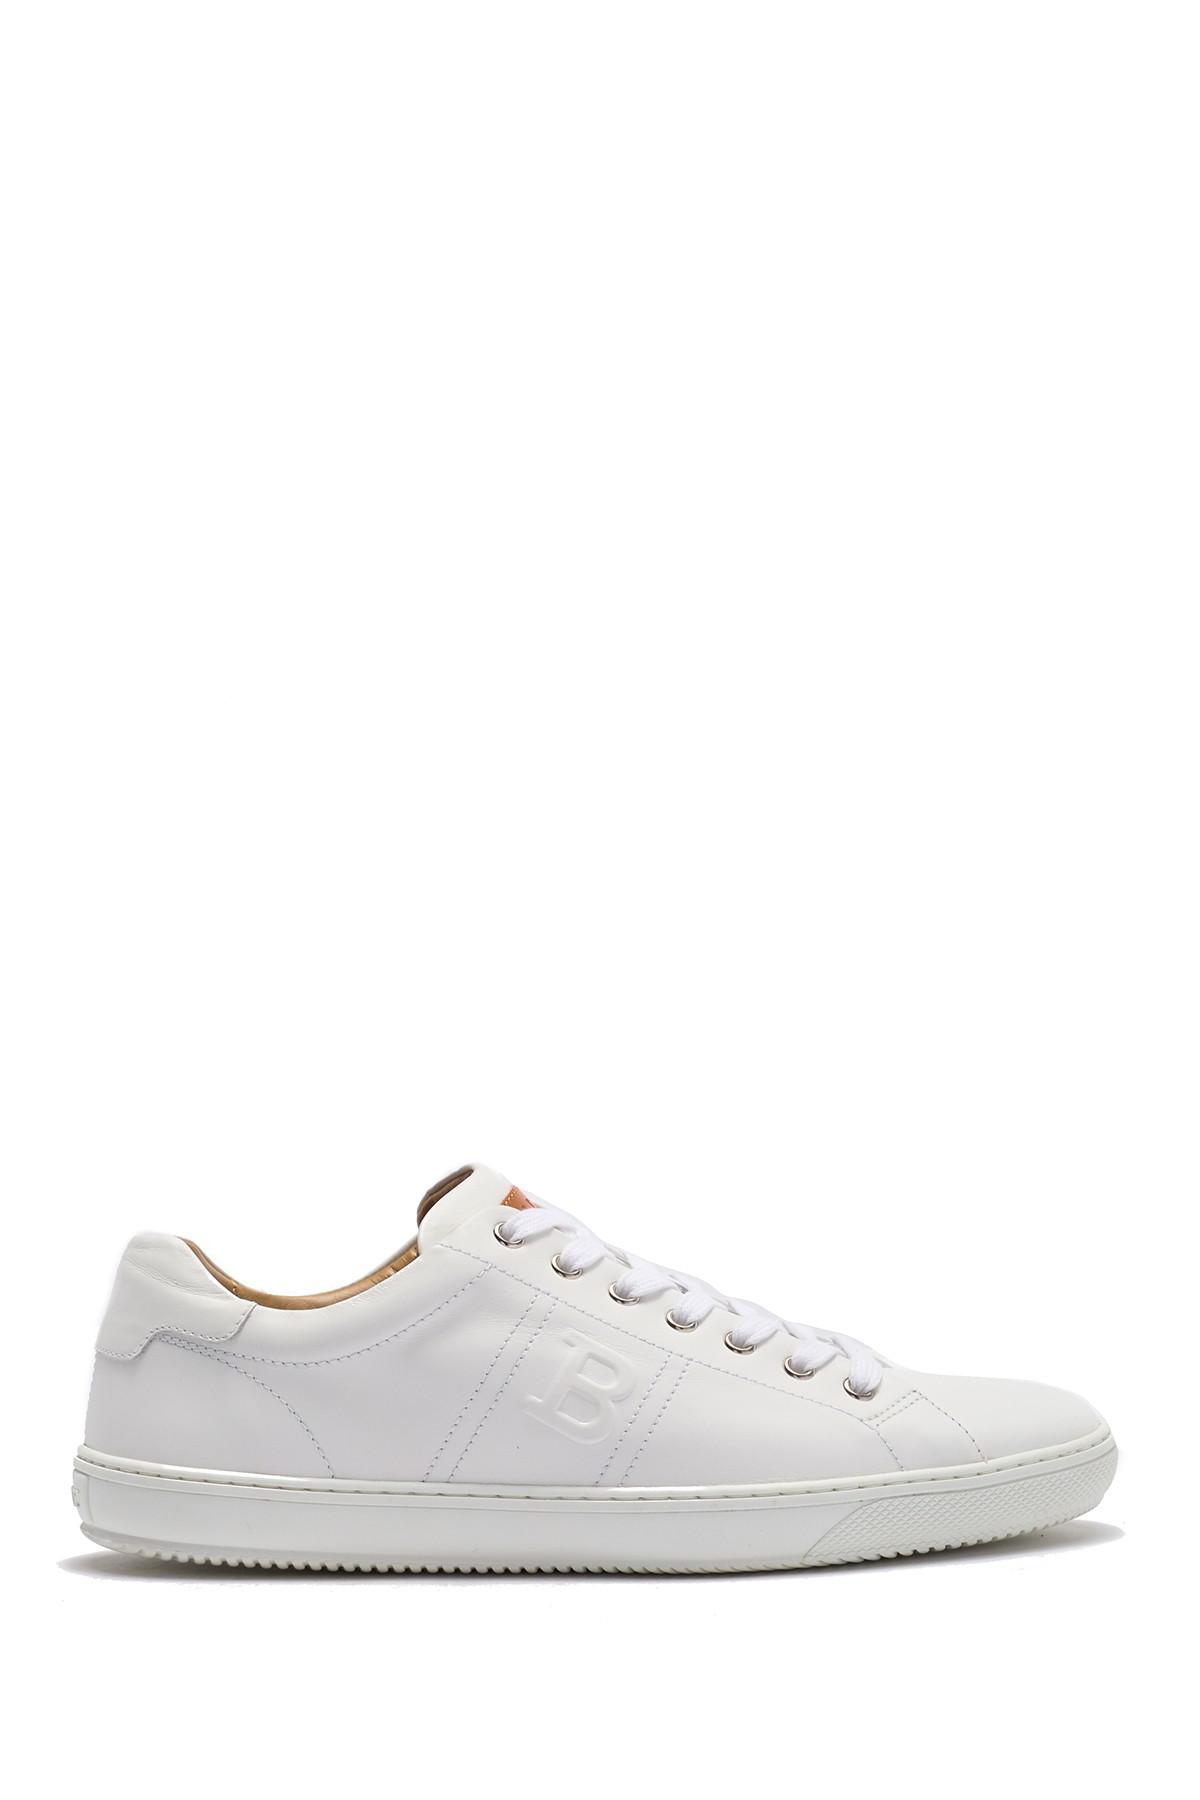 Bally Orivel Calf Plain Sneaker in White for Men | Lyst